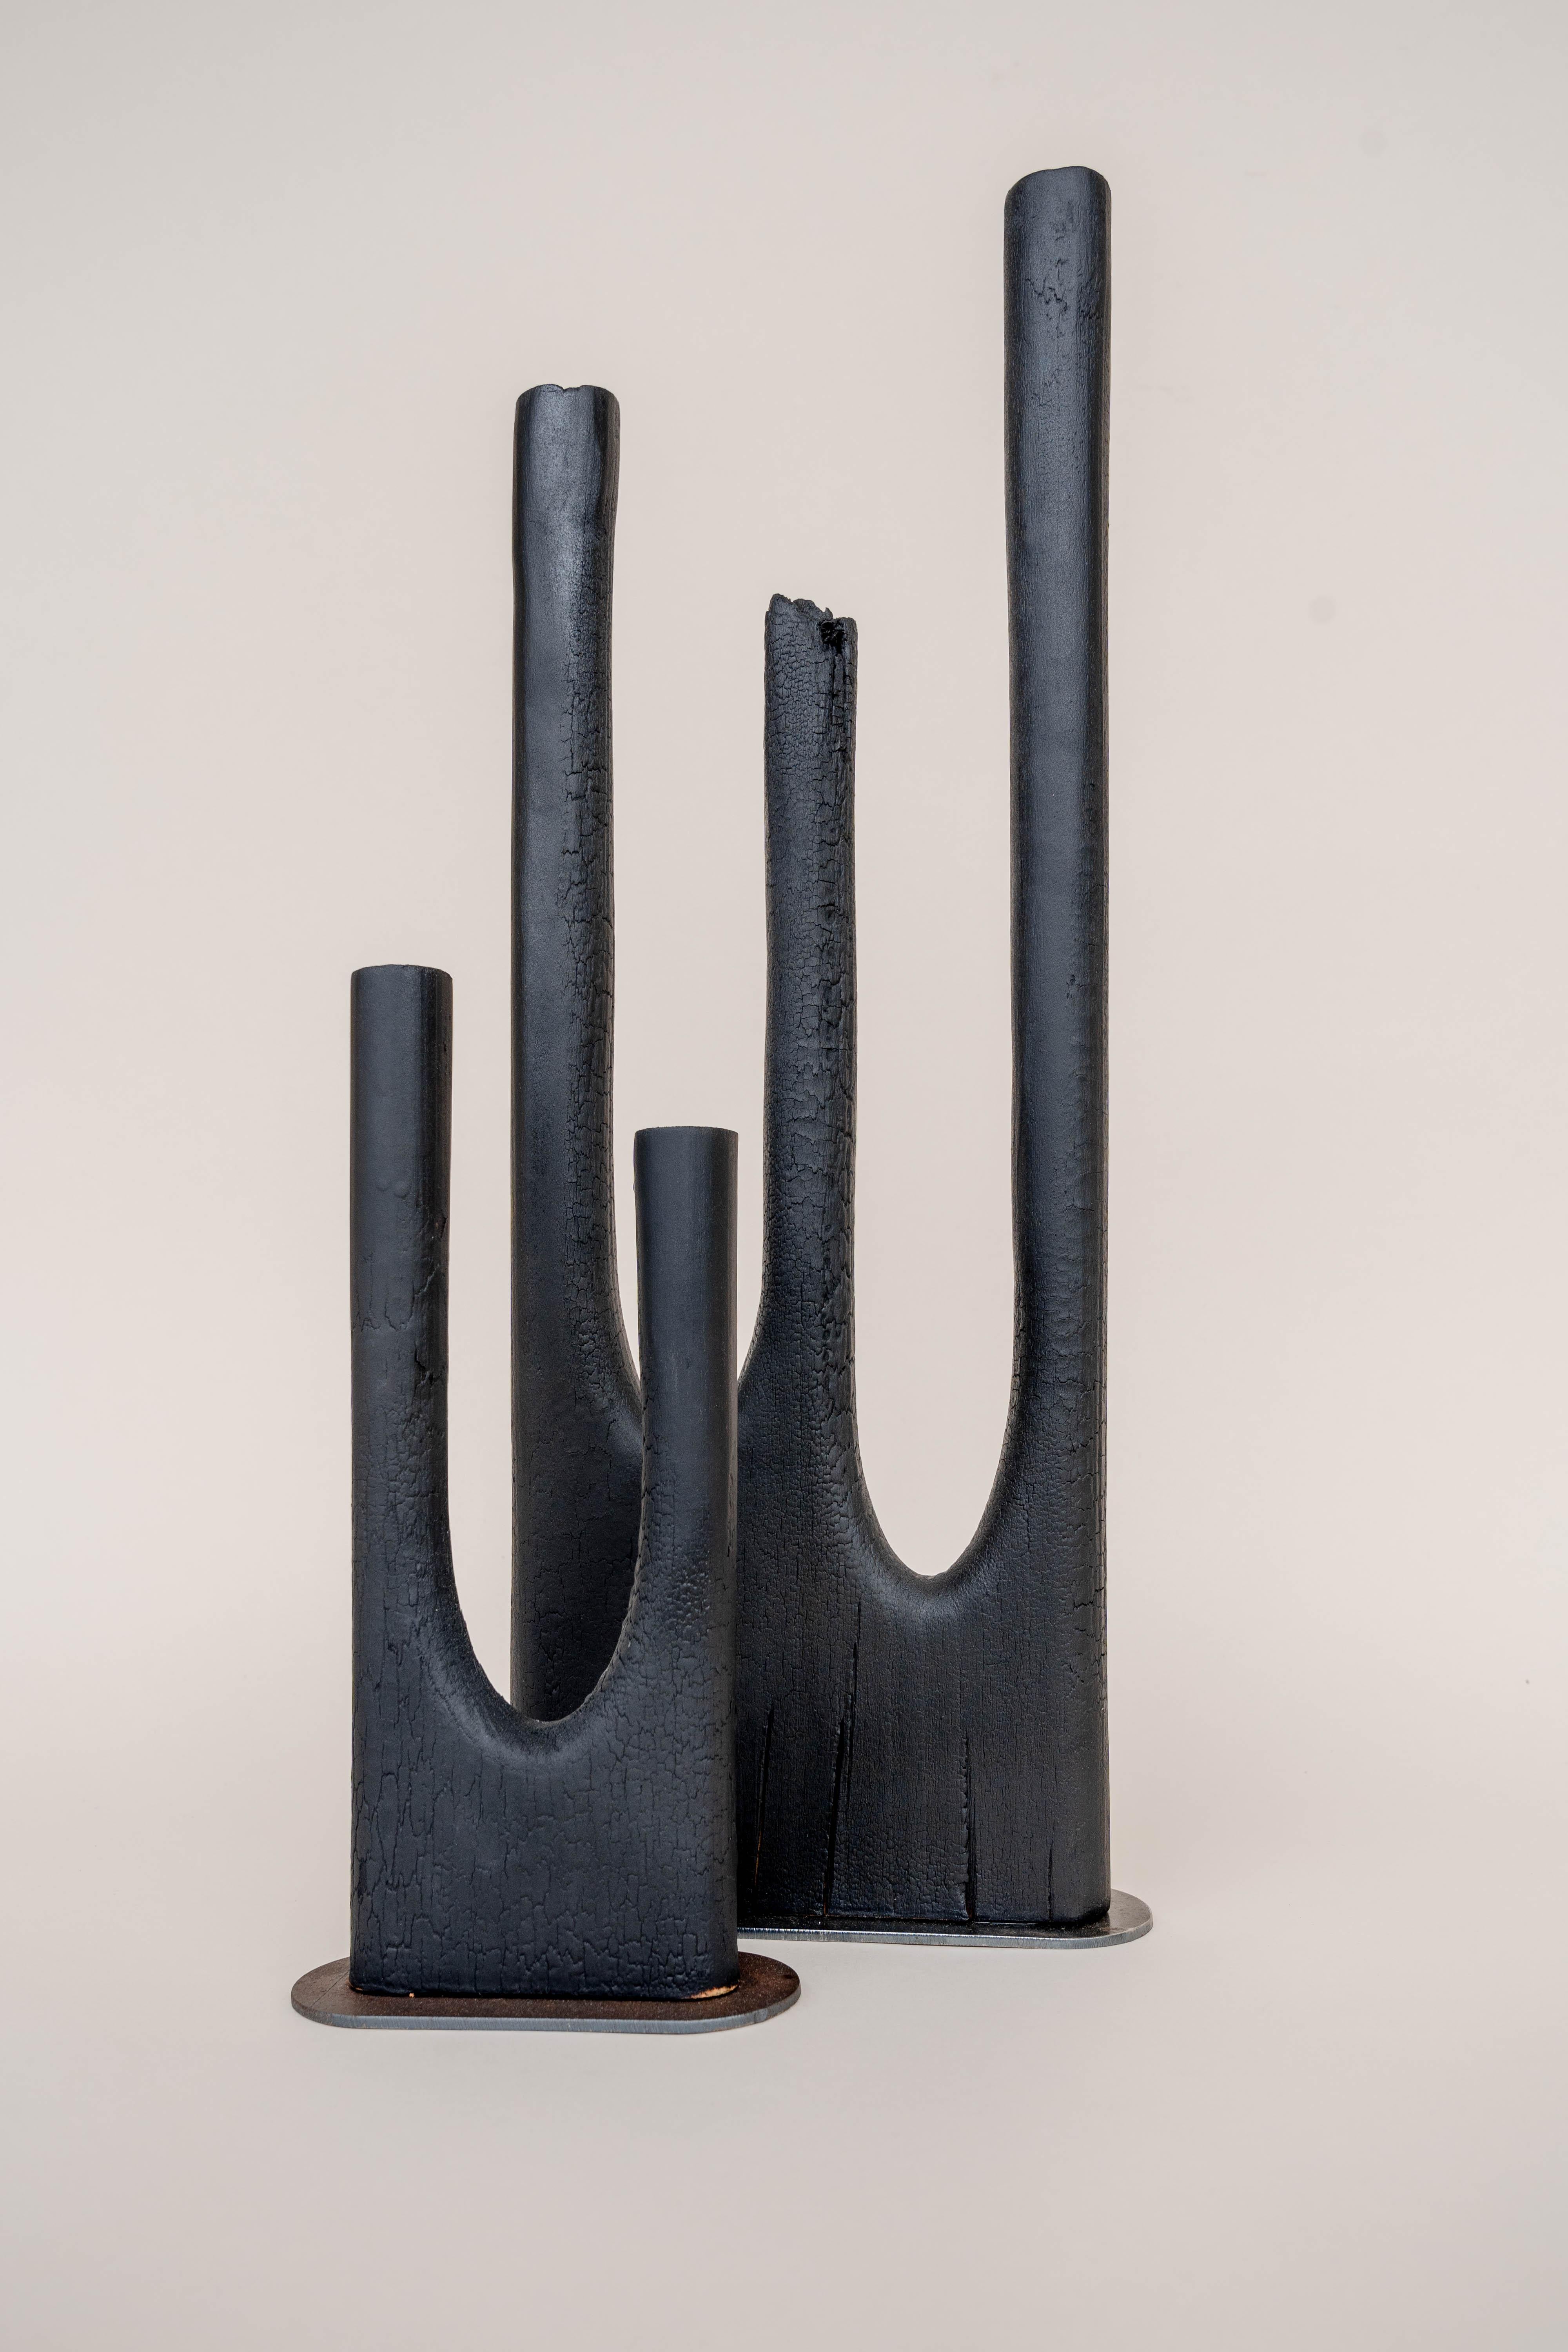 Israeli Trio Vase by Daniel Elkayam For Sale